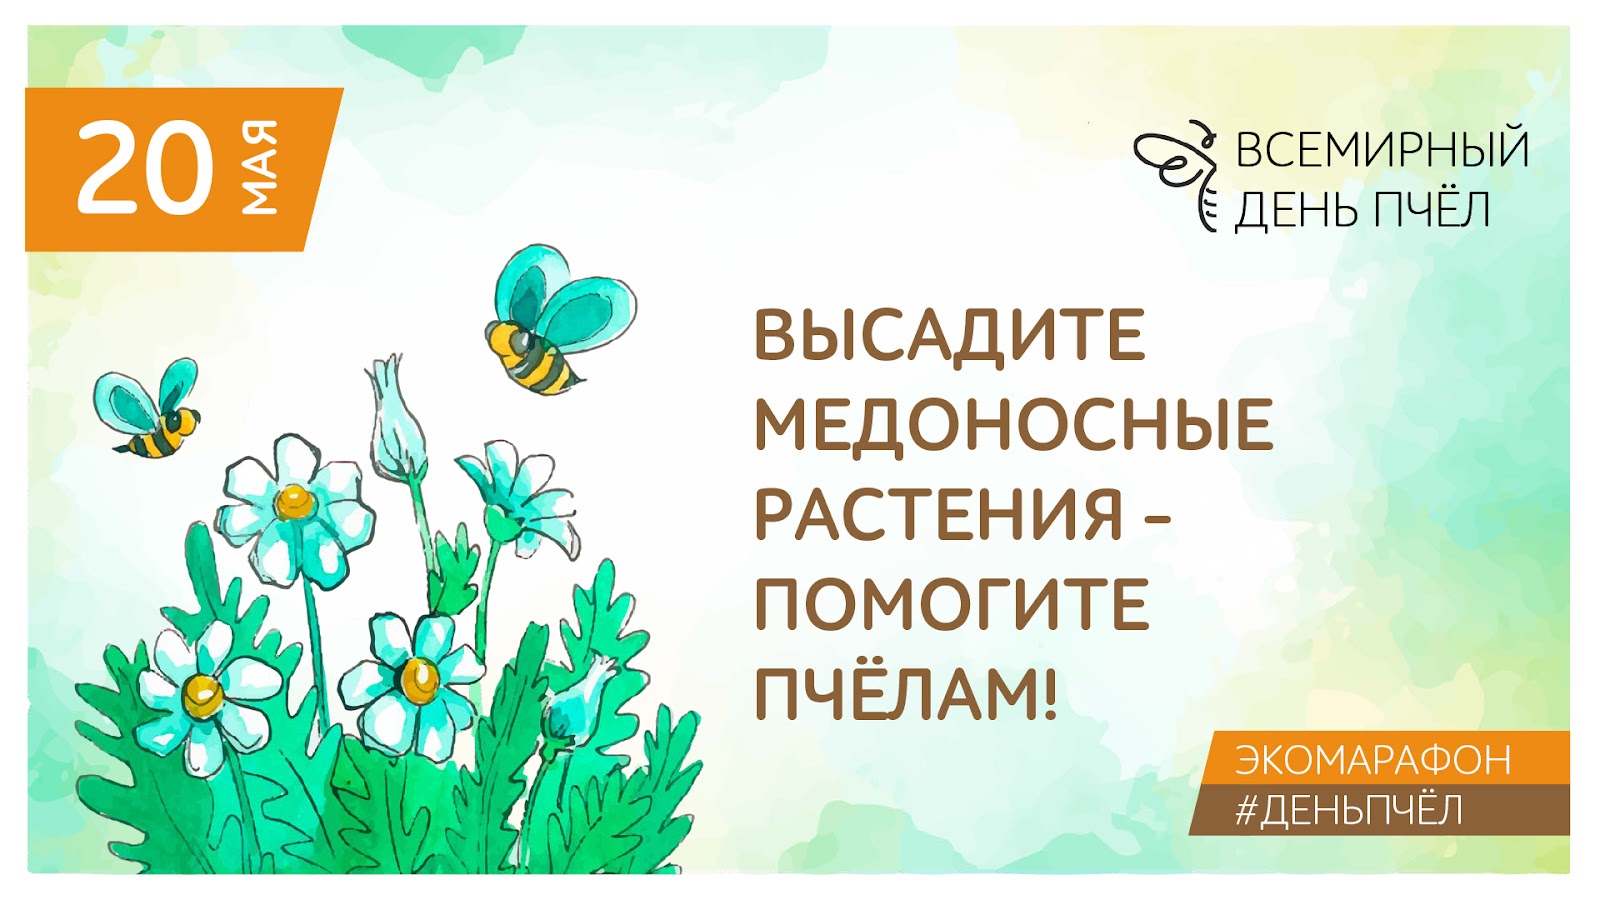 Всемирный день пчёл – большой праздник компании «Тенториум»